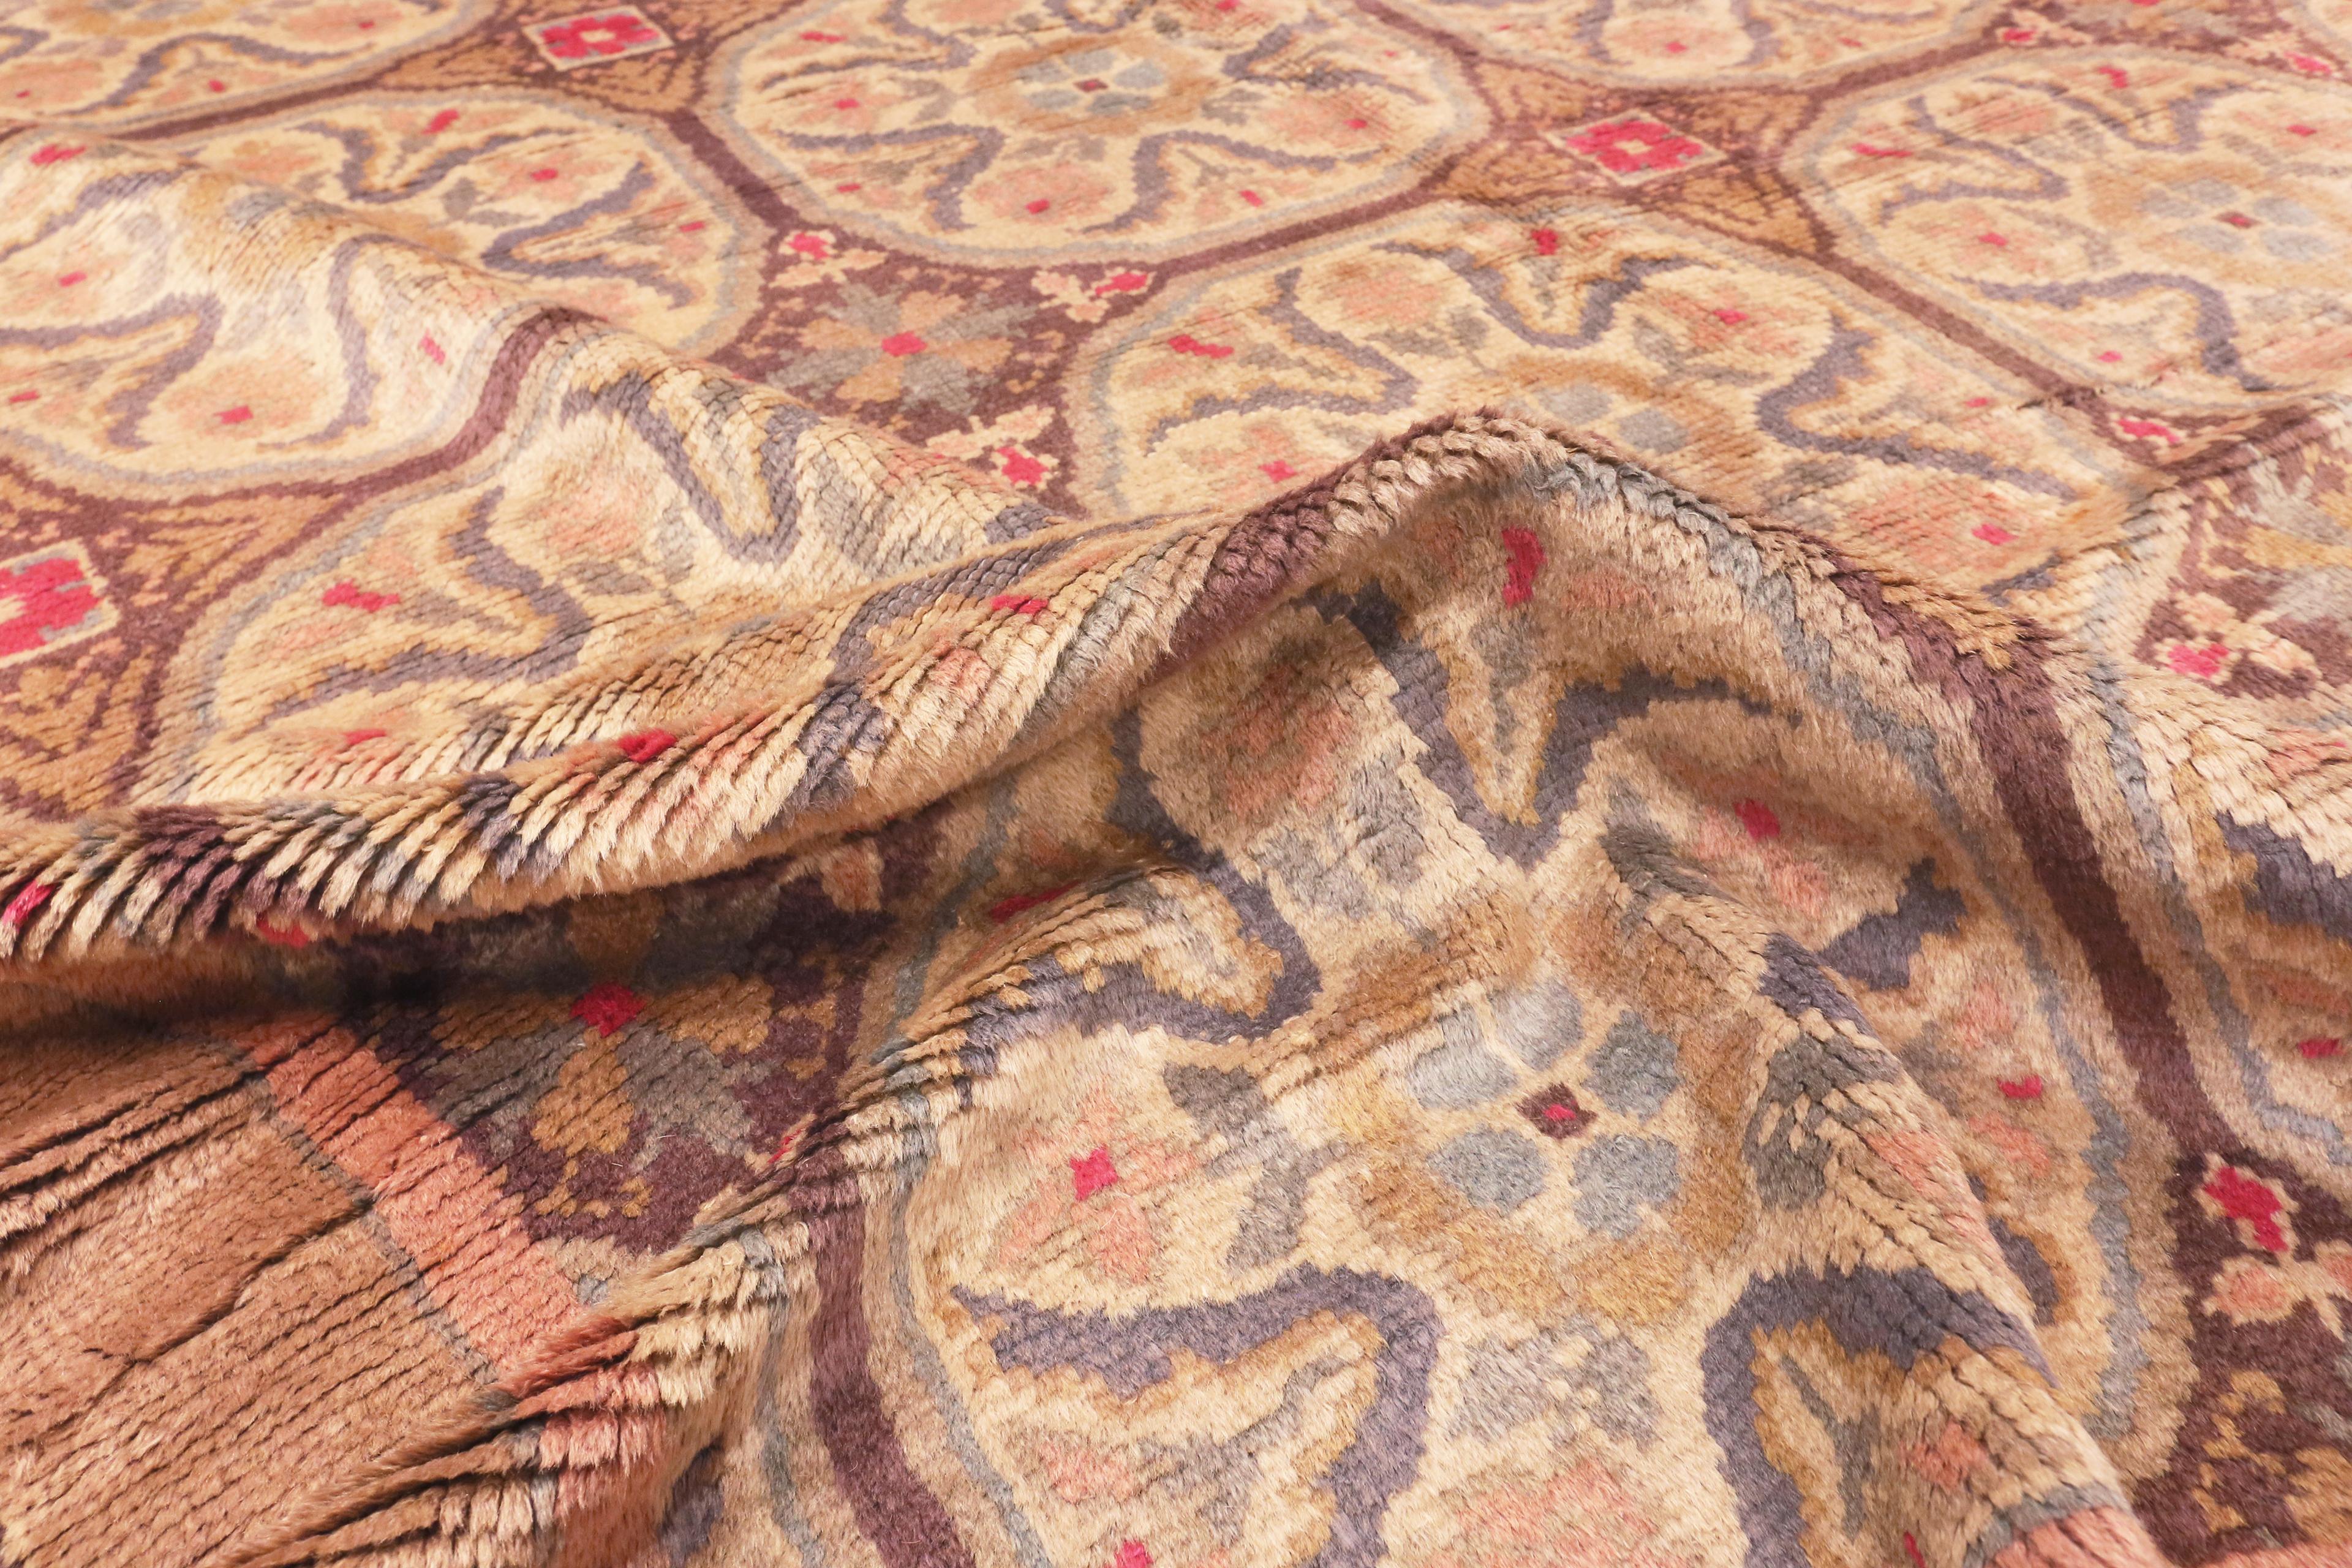 Schöner großer antiker spanischer Teppich, Herkunftsland: Spanien, CIRCA Datum: 1920. Größe: 11 ft 5 in x 17 ft 10 in (3,47 m x 5,43 m)

